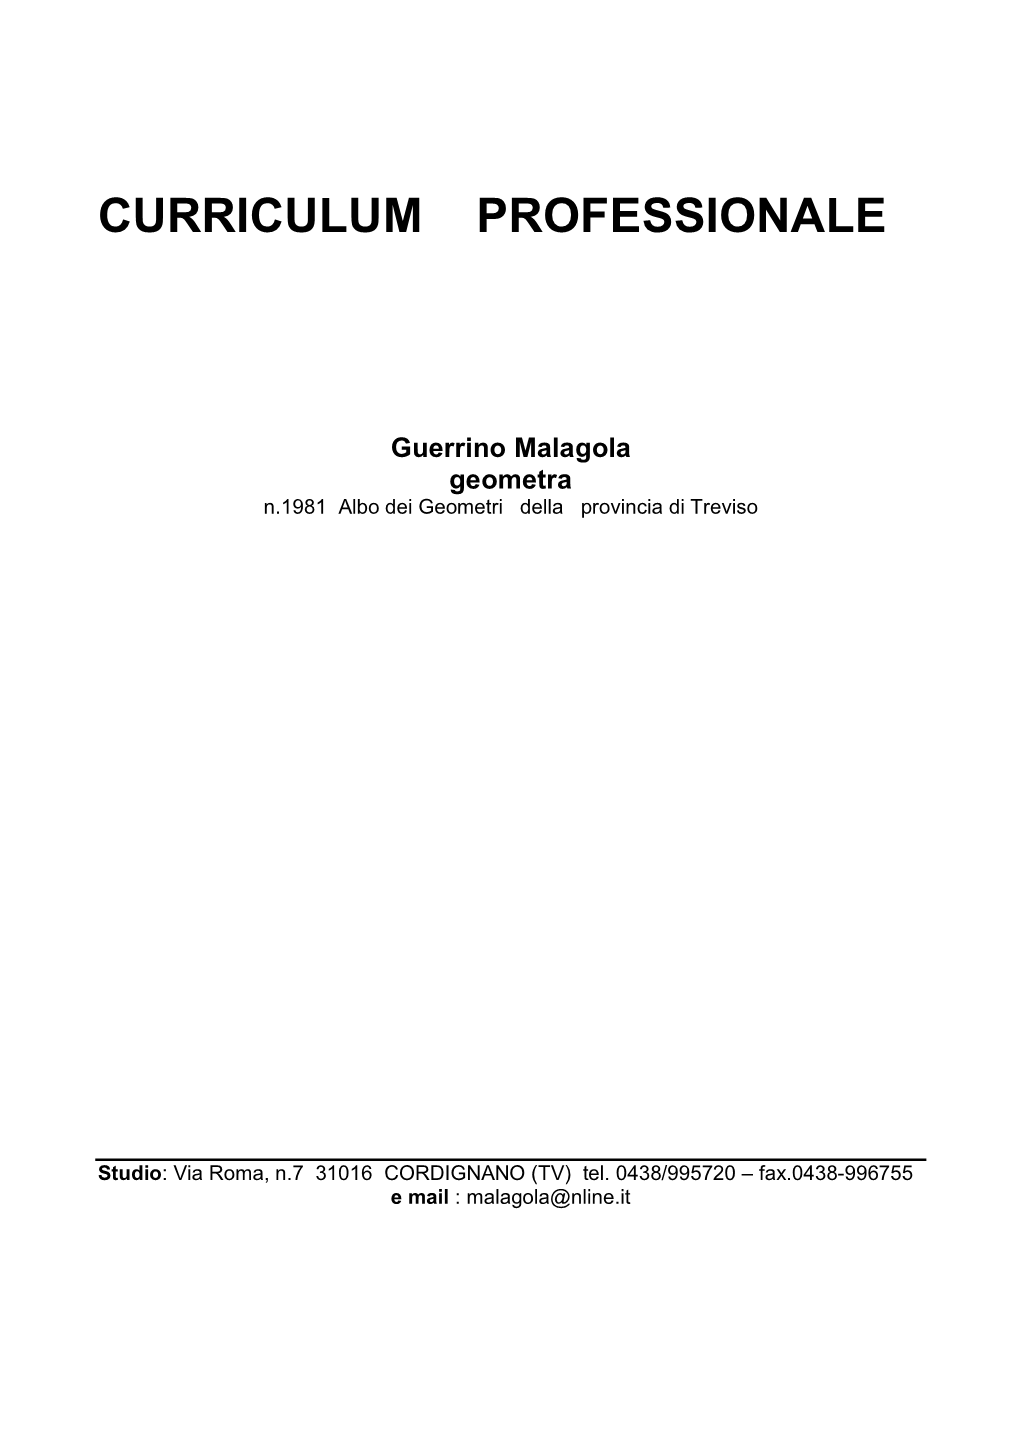 CURRICULUM PROFESSIONALE Guerrino Malagola Geometra